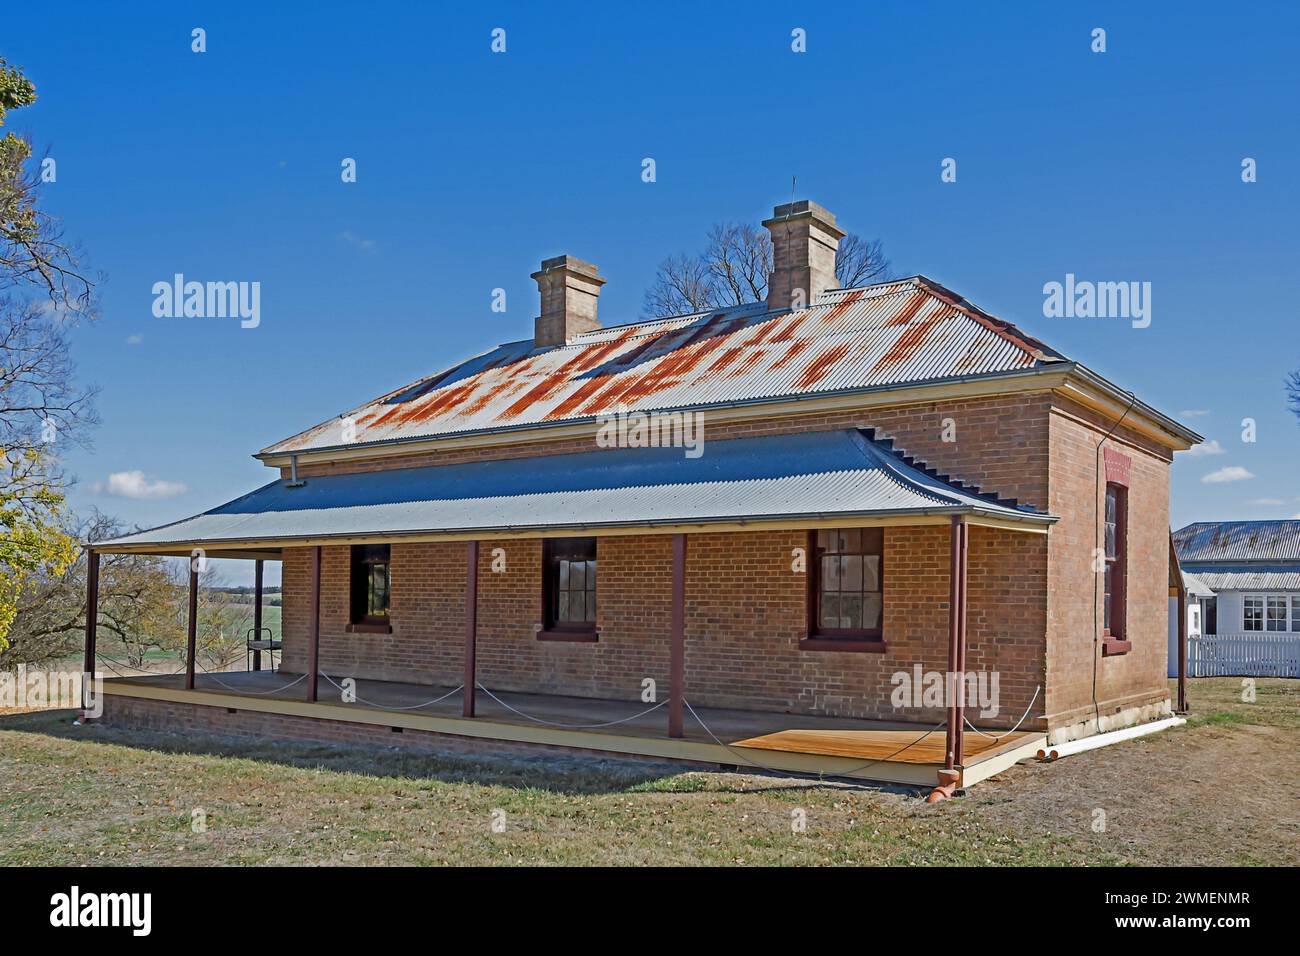 Une maison de briques ouvrières à la propriété du National Trust 'Saumarez', Armidale NSW Australie. Banque D'Images